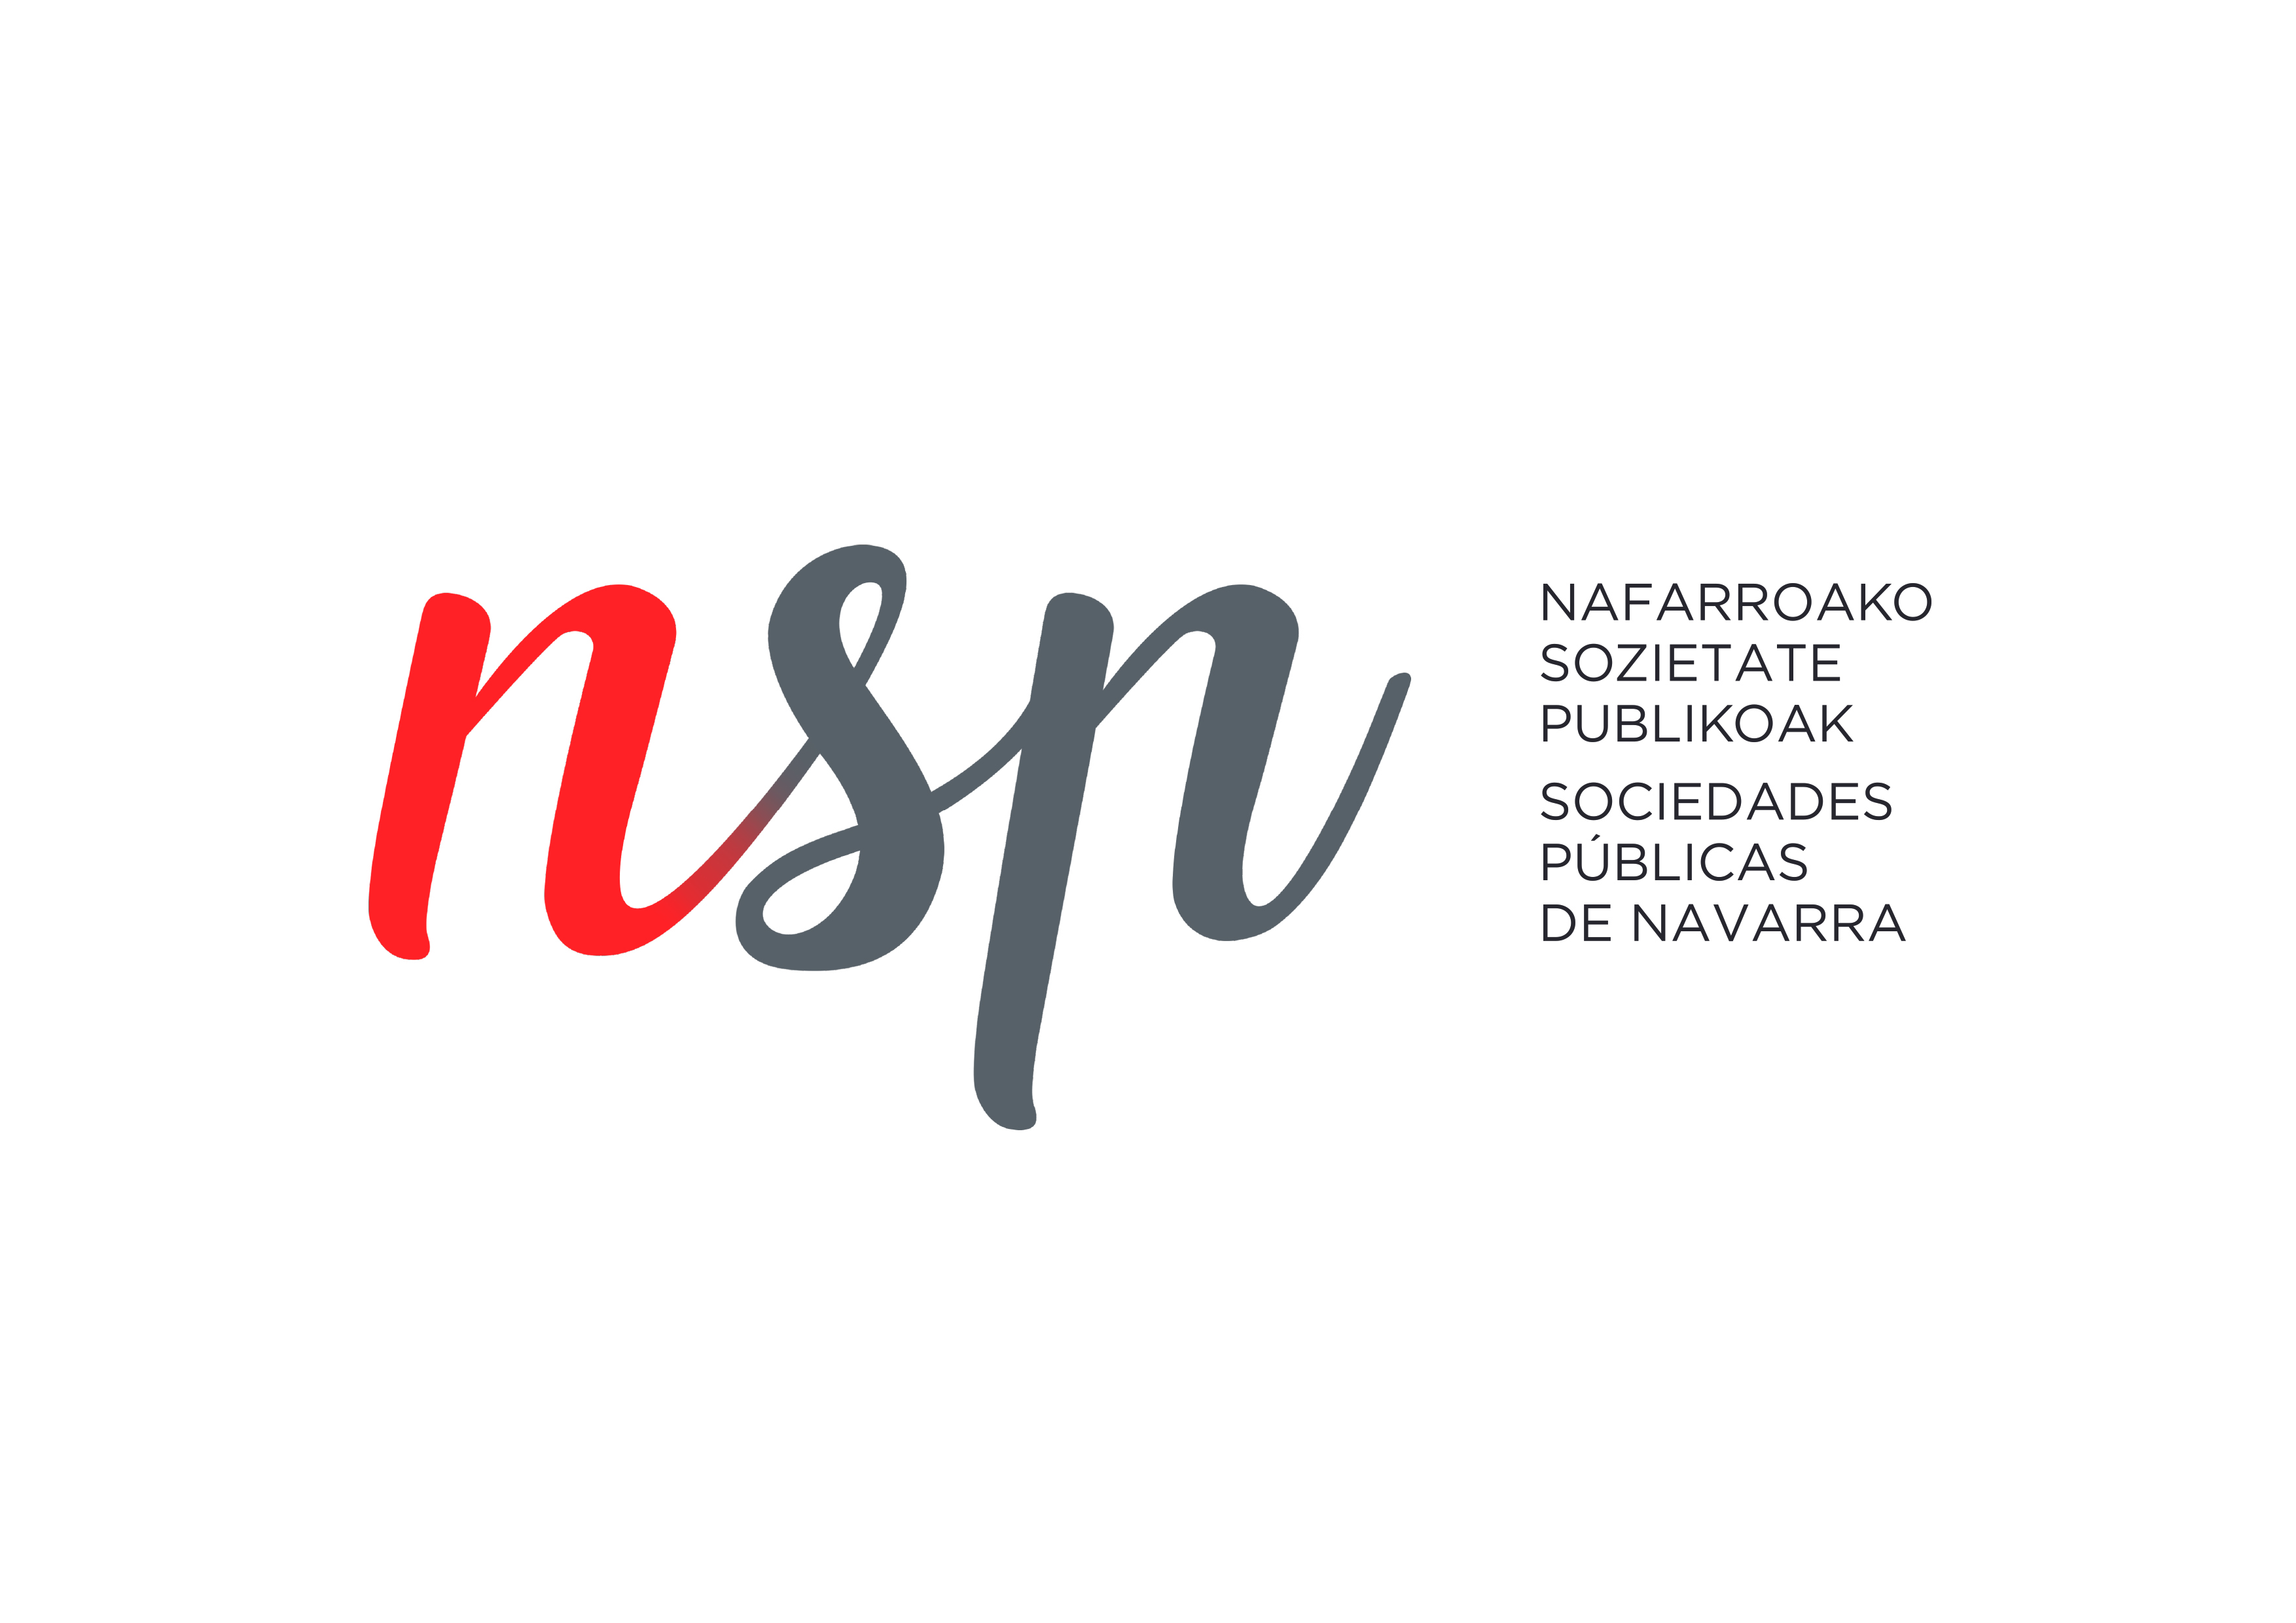 Nueva identidad gráfica de las sociedades públicas de Gobierno de Navarra